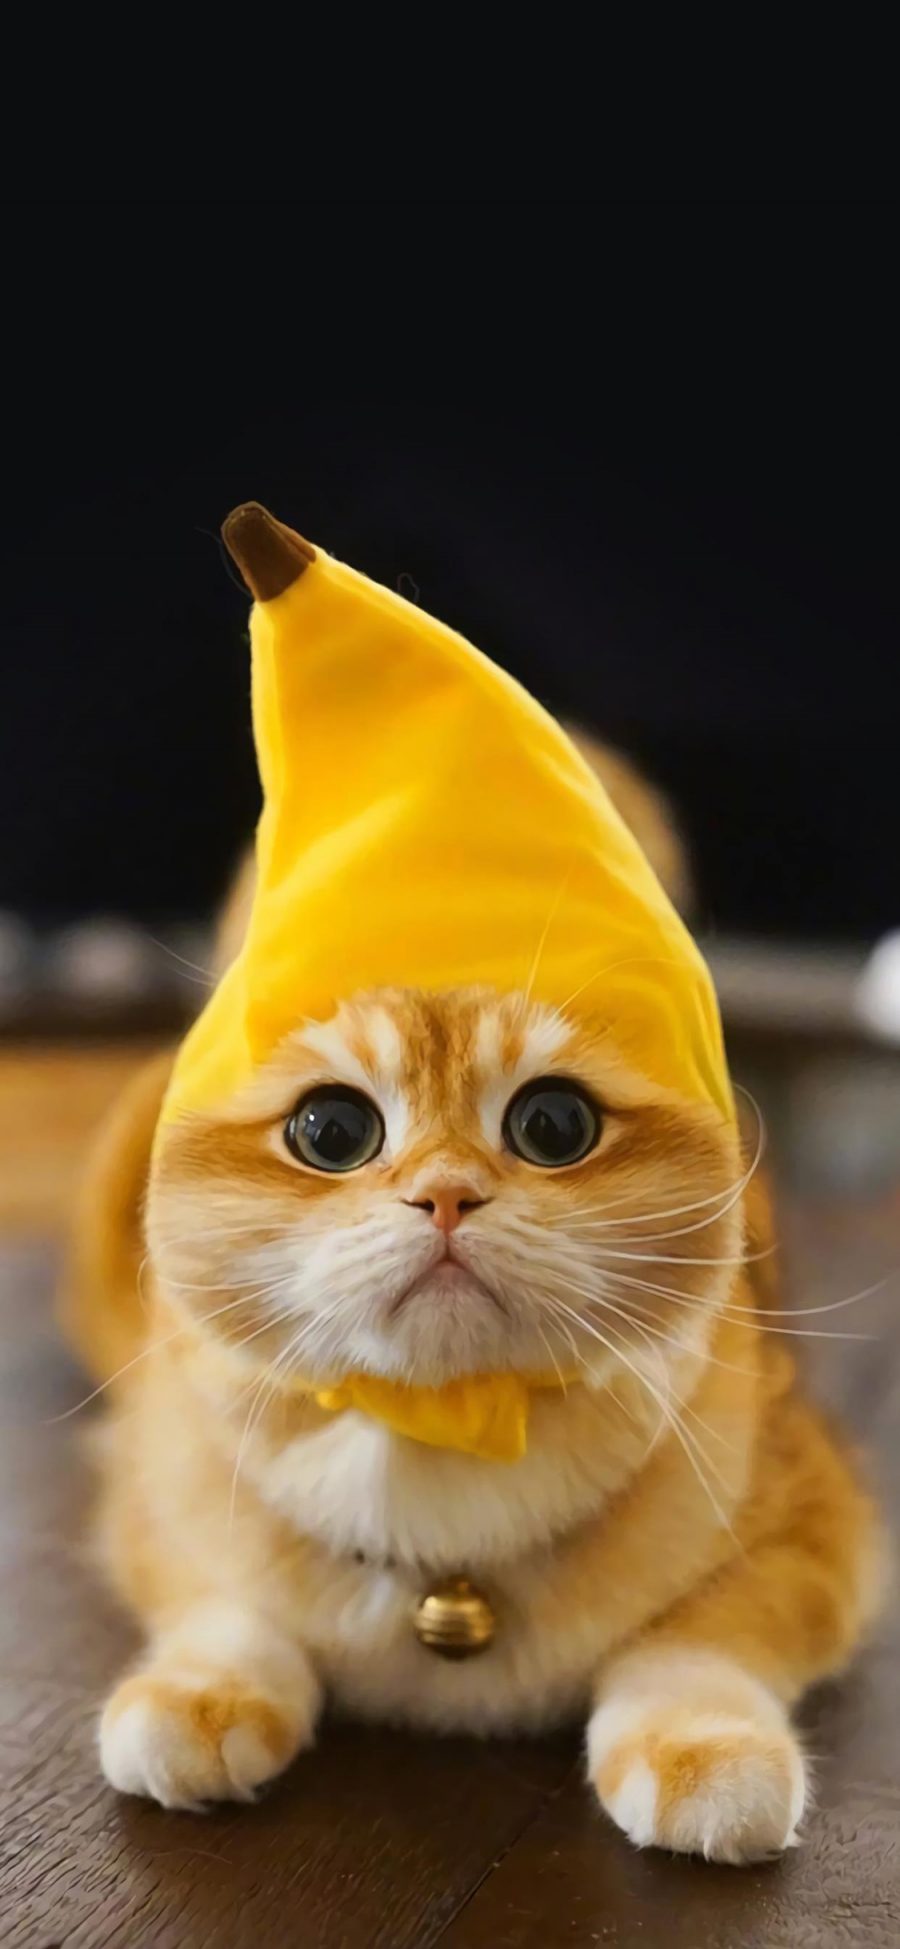 [2436×1125]猫咪 喵星人 宠物 萌 香蕉帽子 可爱 苹果手机壁纸图片